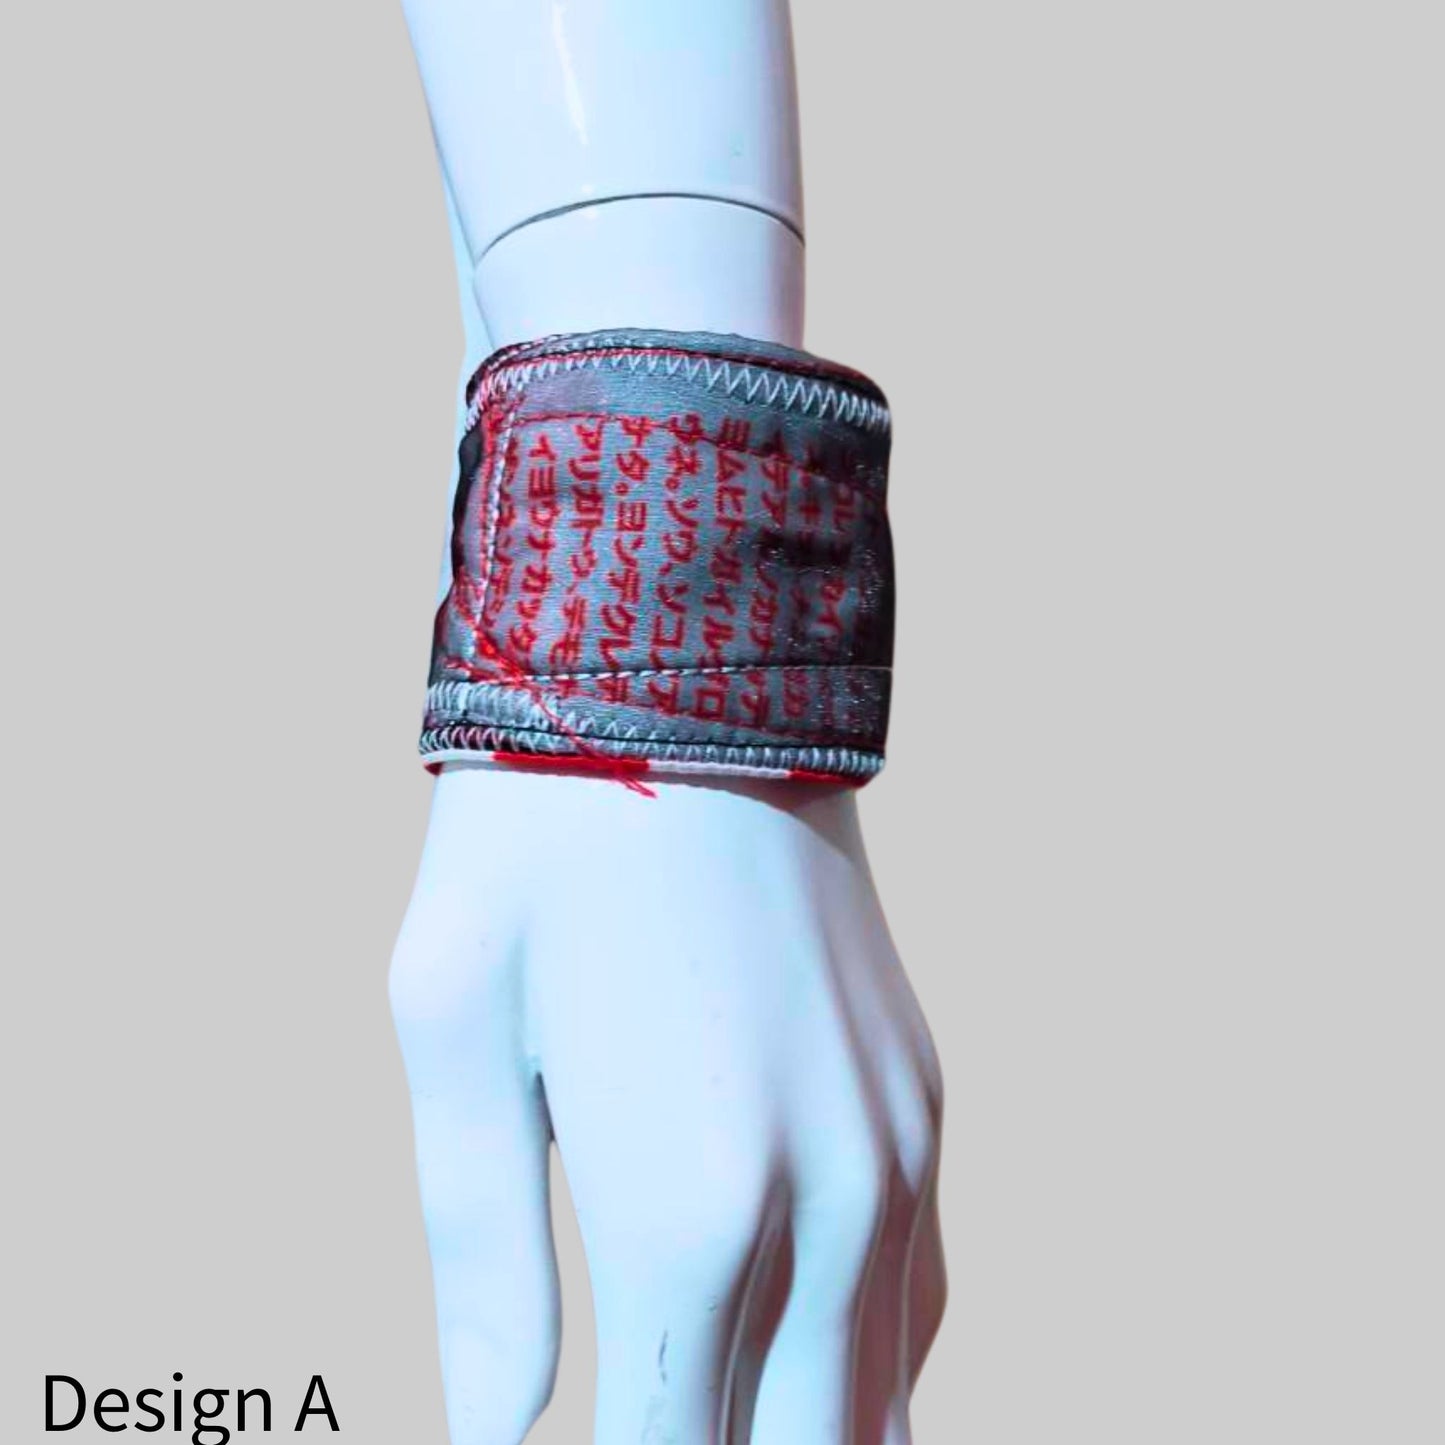 Japanese writings Knit x Wool Wristband